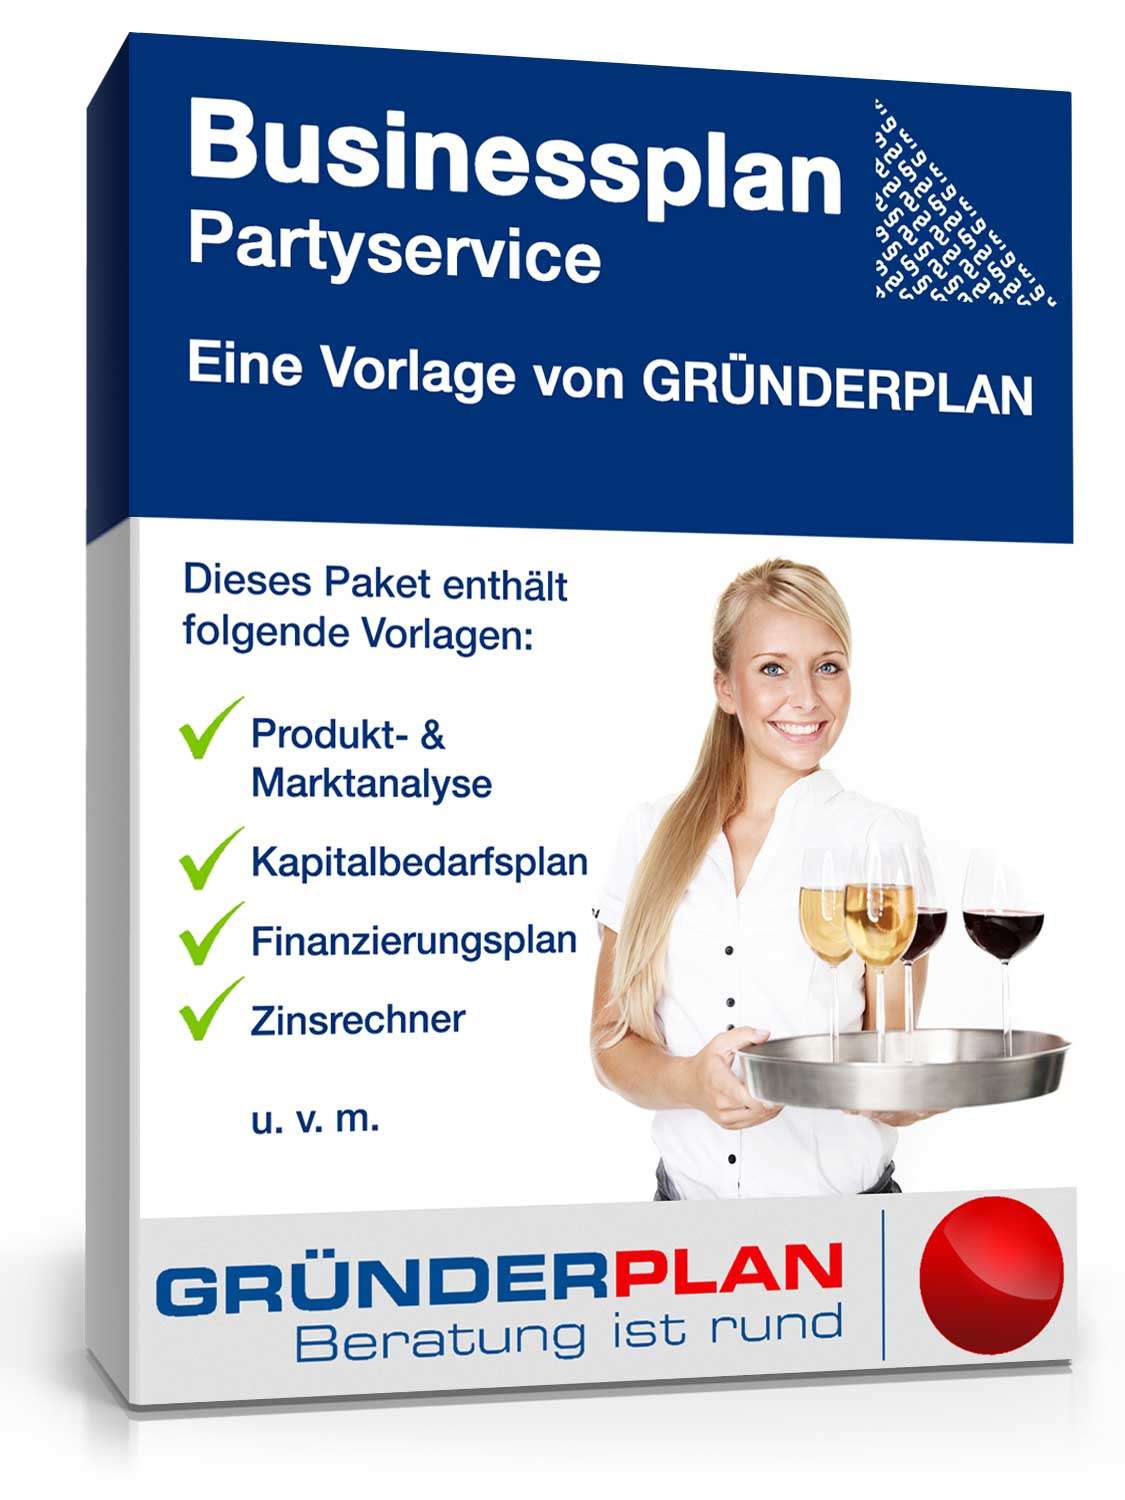 Hauptbild des Produkts: Businessplan Partyservice von Gründerplan